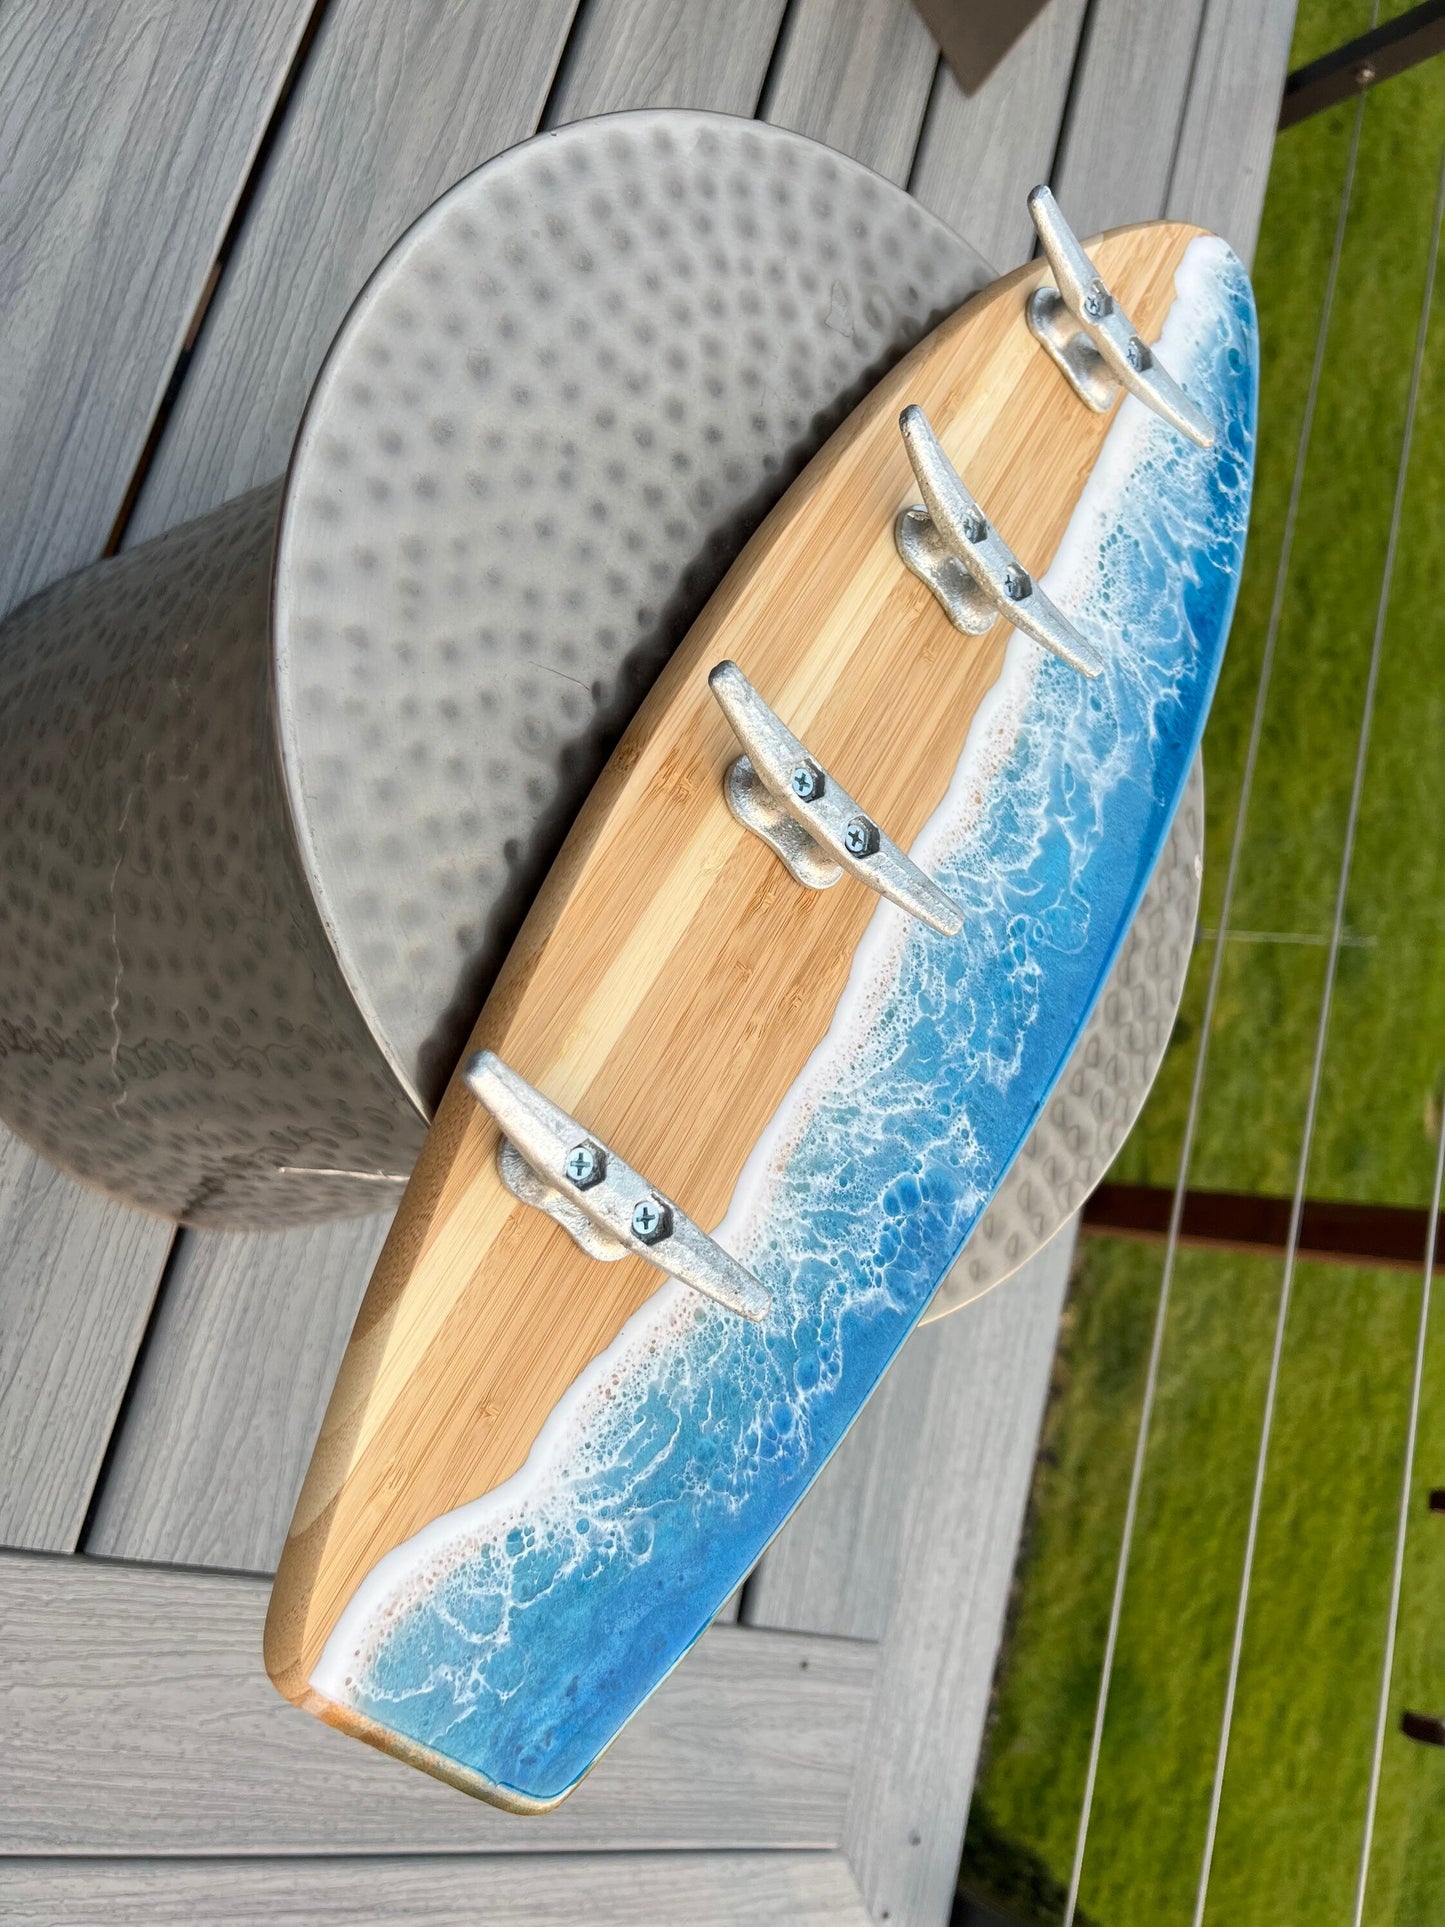 Ocean Waves Resin Surfboard coat or towel hanger